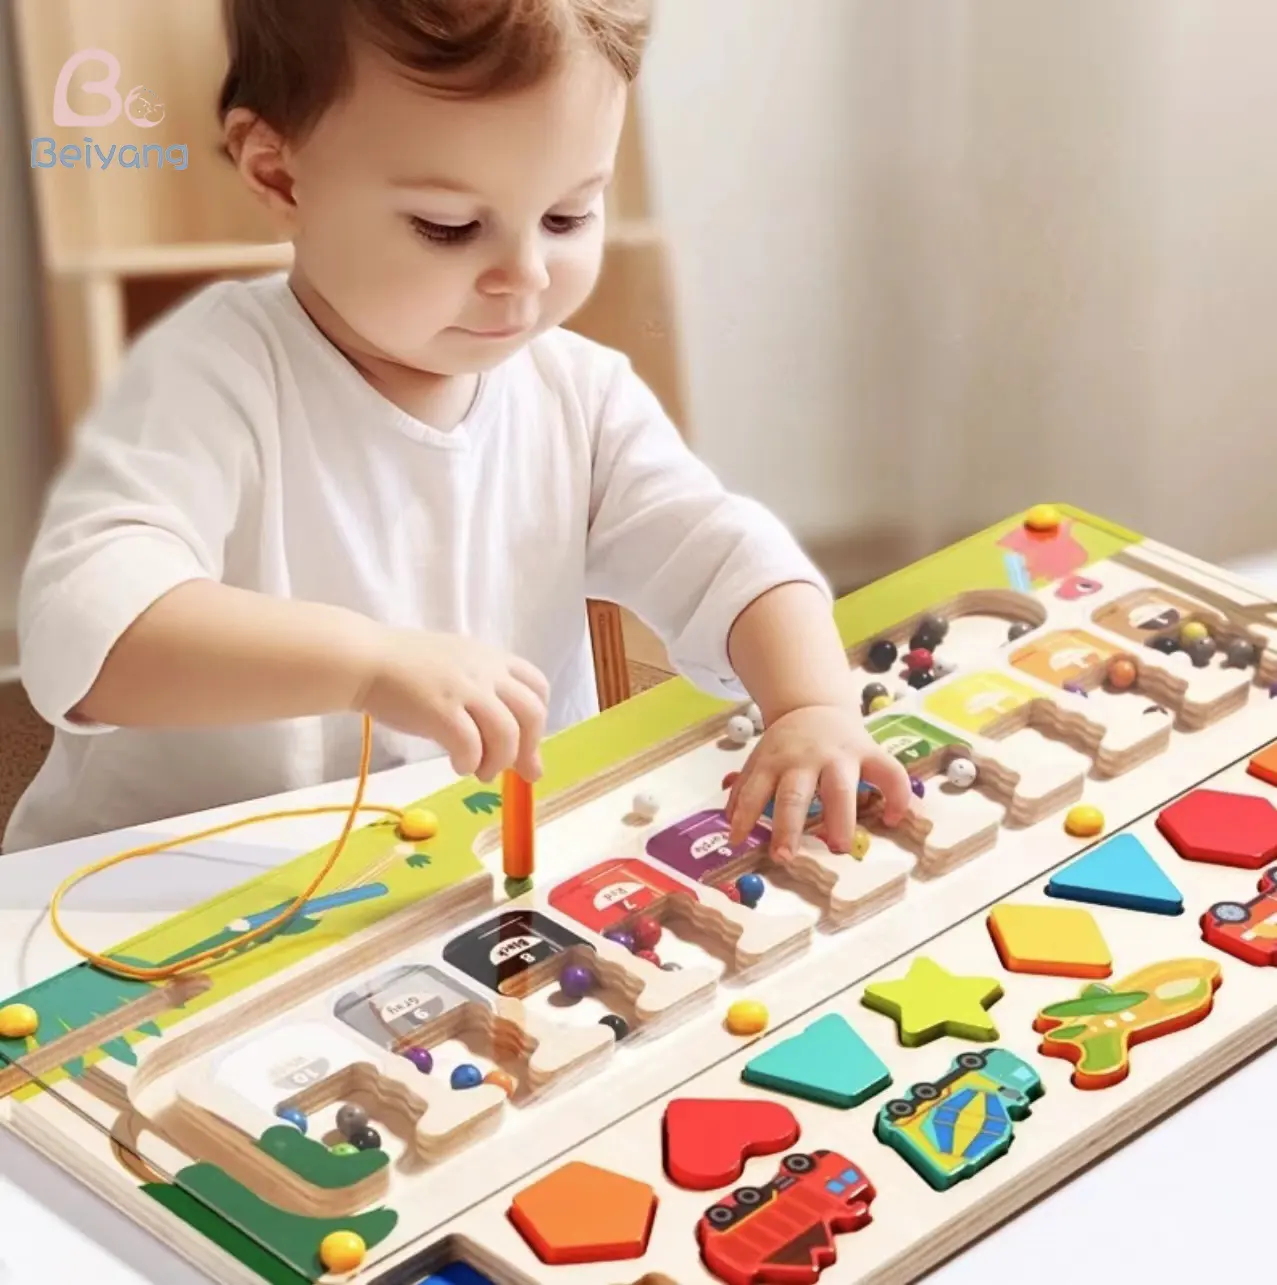 Quebra-cabeça de madeira para crianças, jogo de tabuleiro 3 em 1 com classificação de cores, brinquedo Montessori educacional infantil, contas magnéticas labirinto